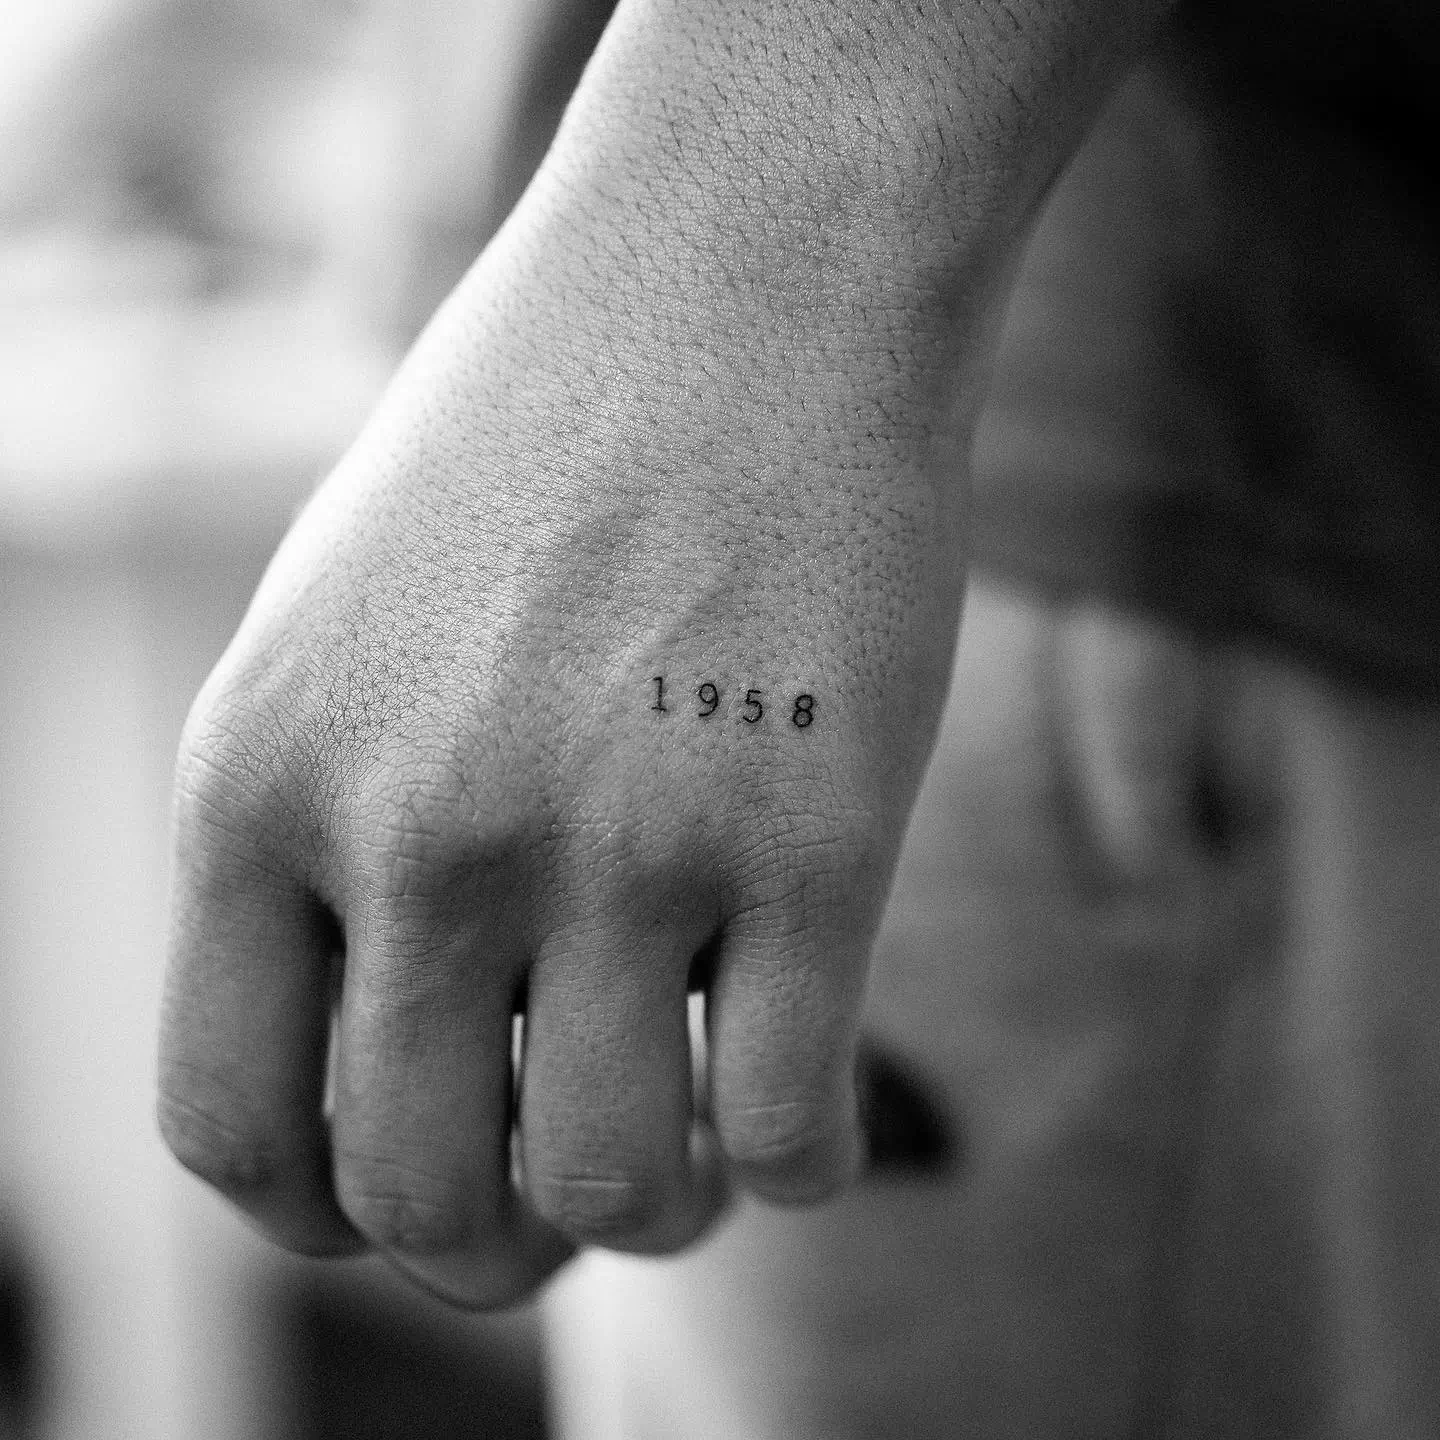 Datums-Tattoos in Schwarz und Weiß 1